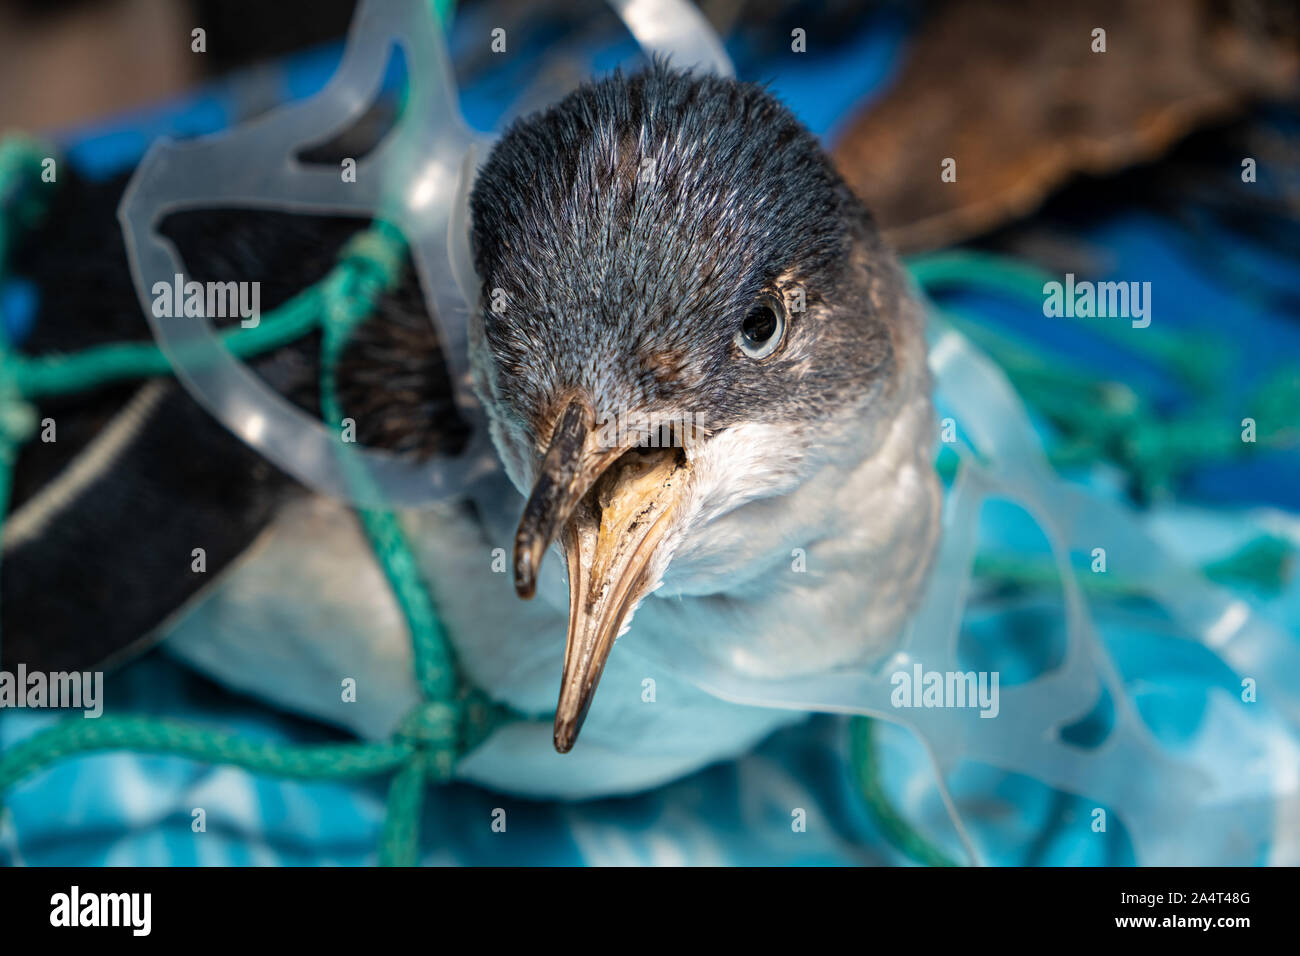 Marine Kunststoff Umweltverschmutzung und Naturschutz Konzept - Pinguin in Kunststoff net gefangen Stockfoto